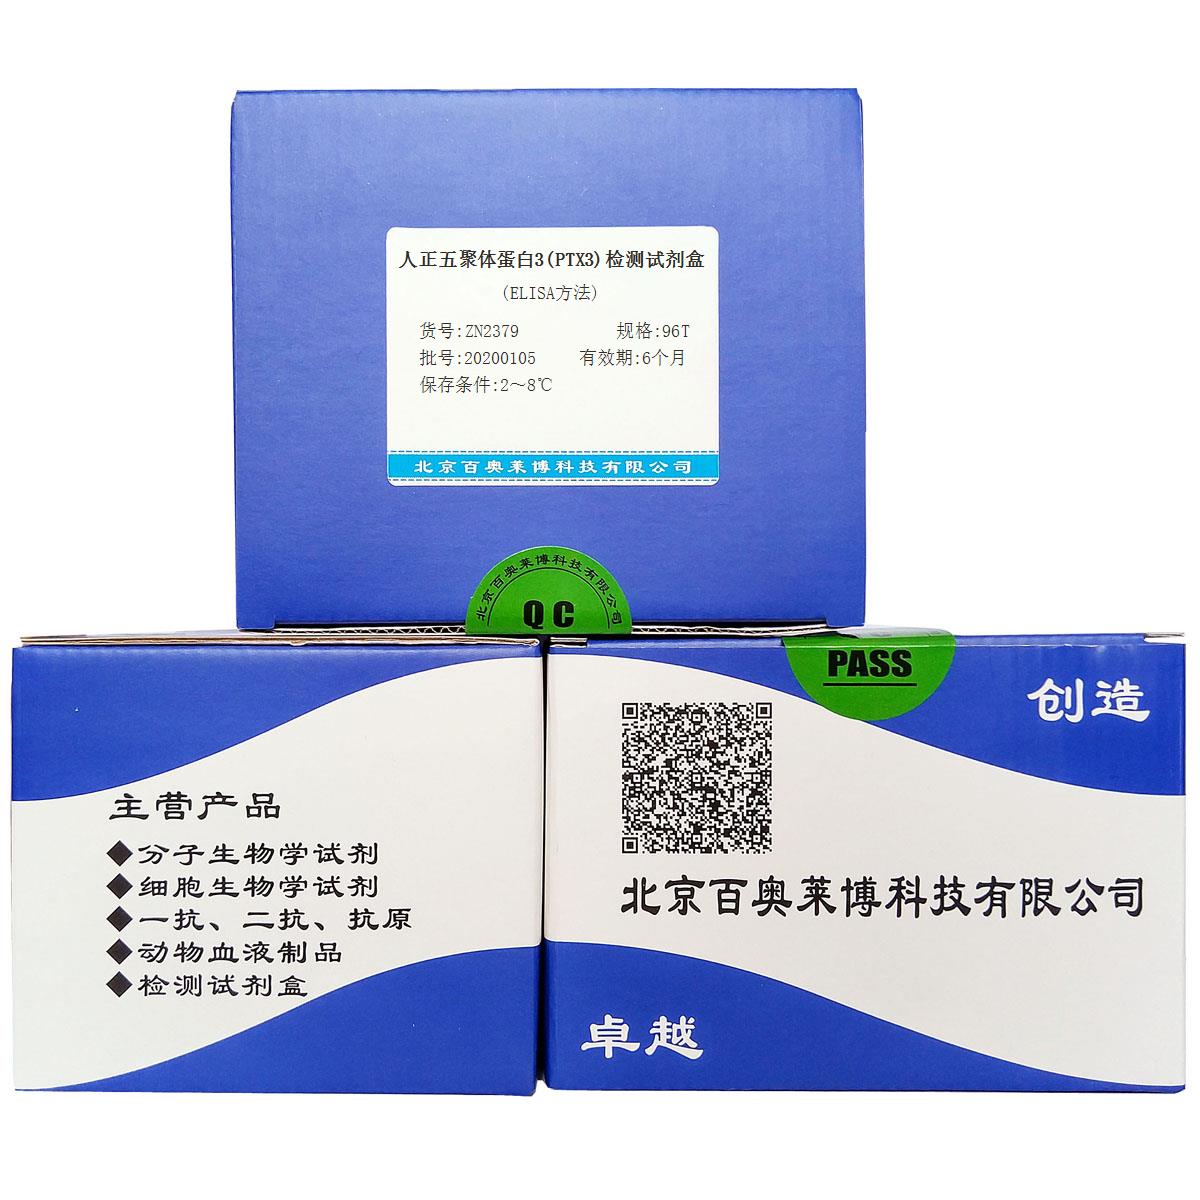 人正五聚体蛋白3(PTX3)检测试剂盒(ELISA方法)